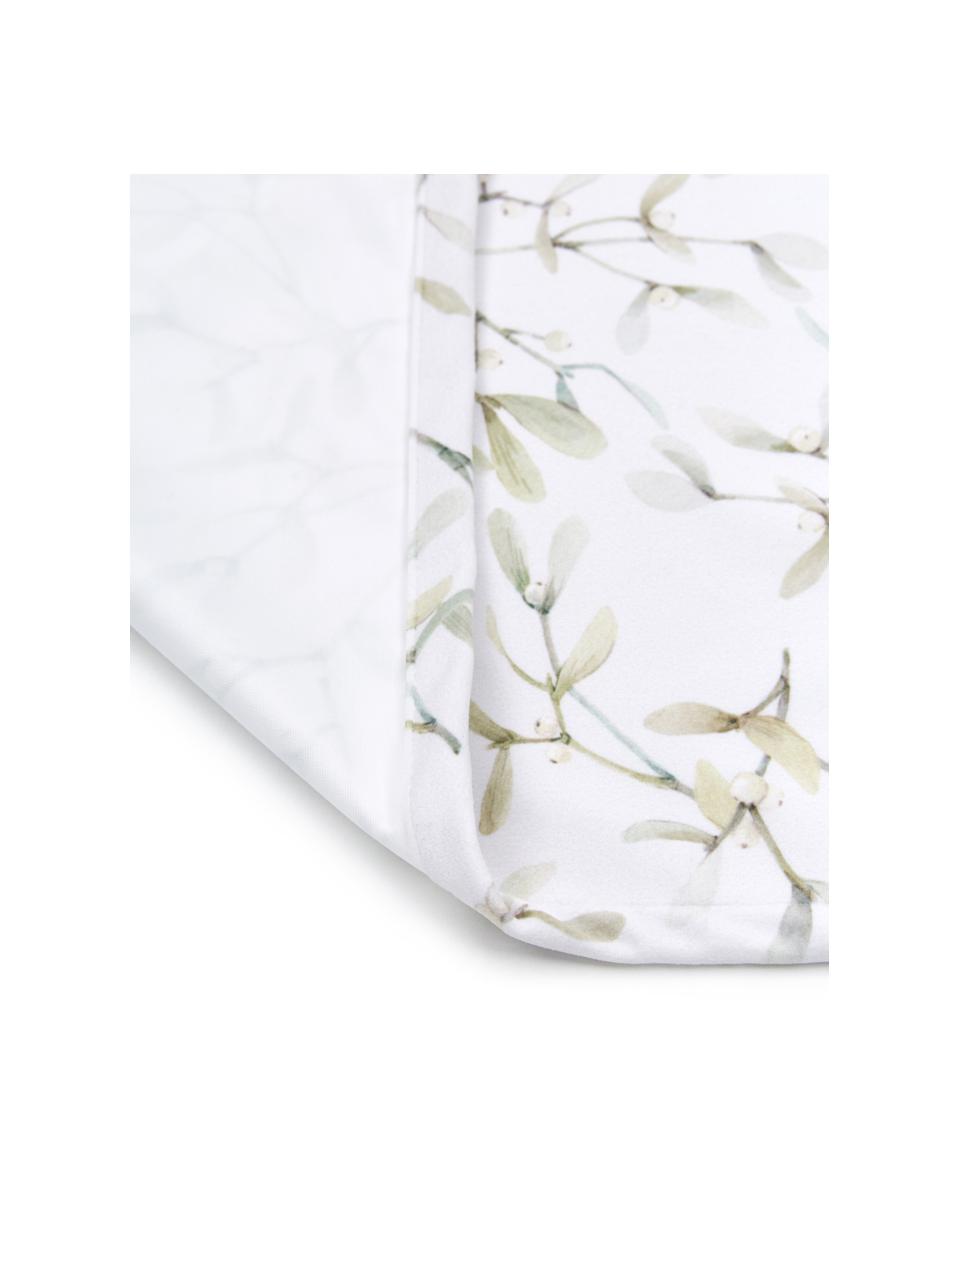 Tischläufer Fairytale mit Mistelzweig-Muster, 100 % Polyester, Weiß, Grüntöne, B 40 x L 145 cm